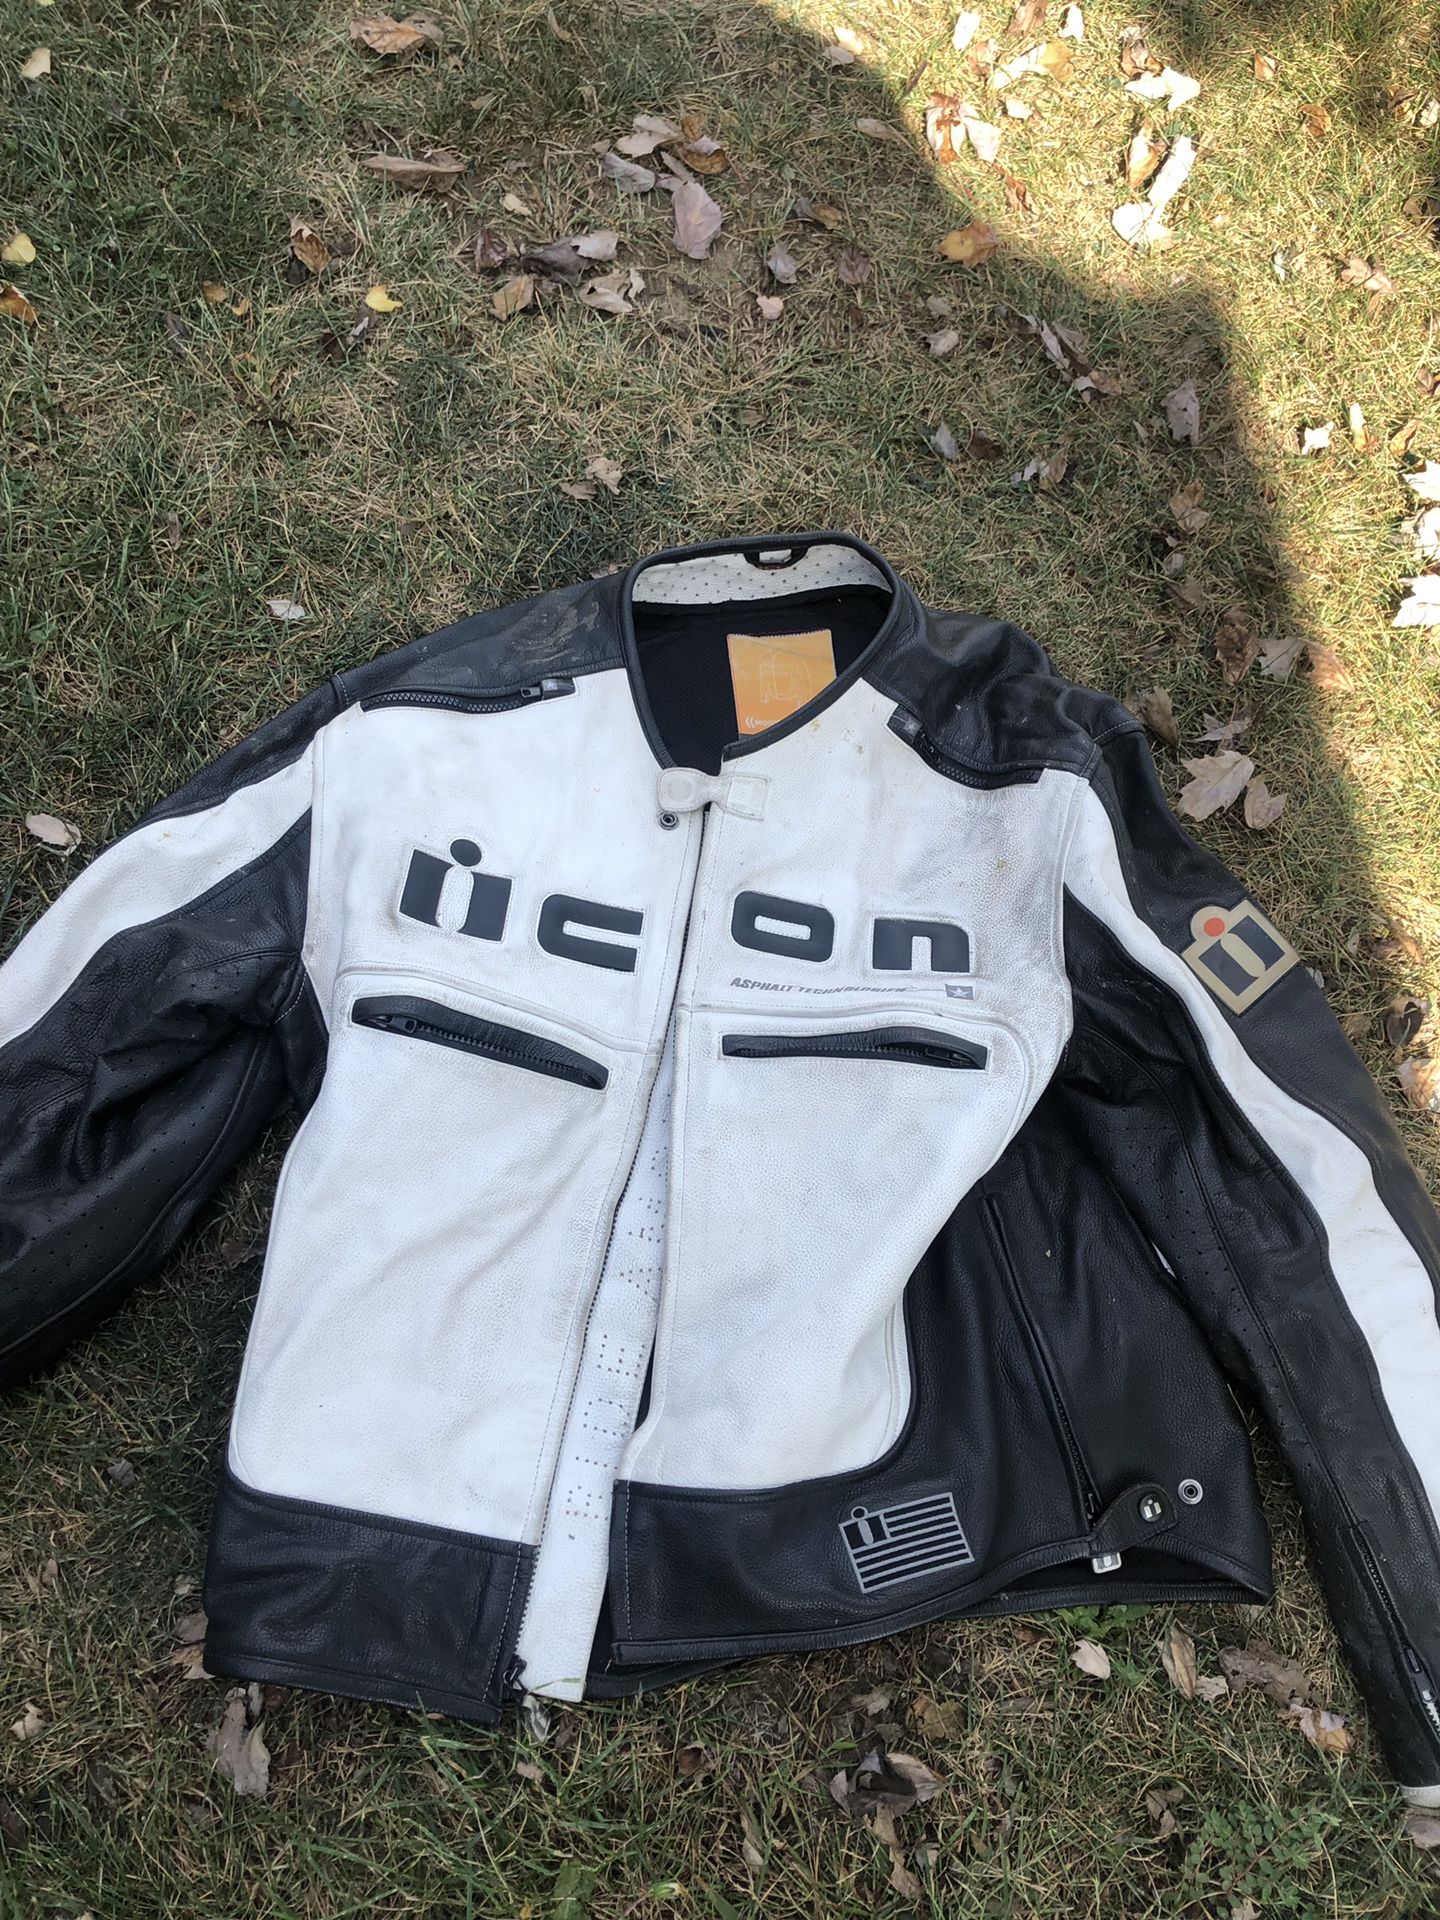 Motorcycle jacket size xxl